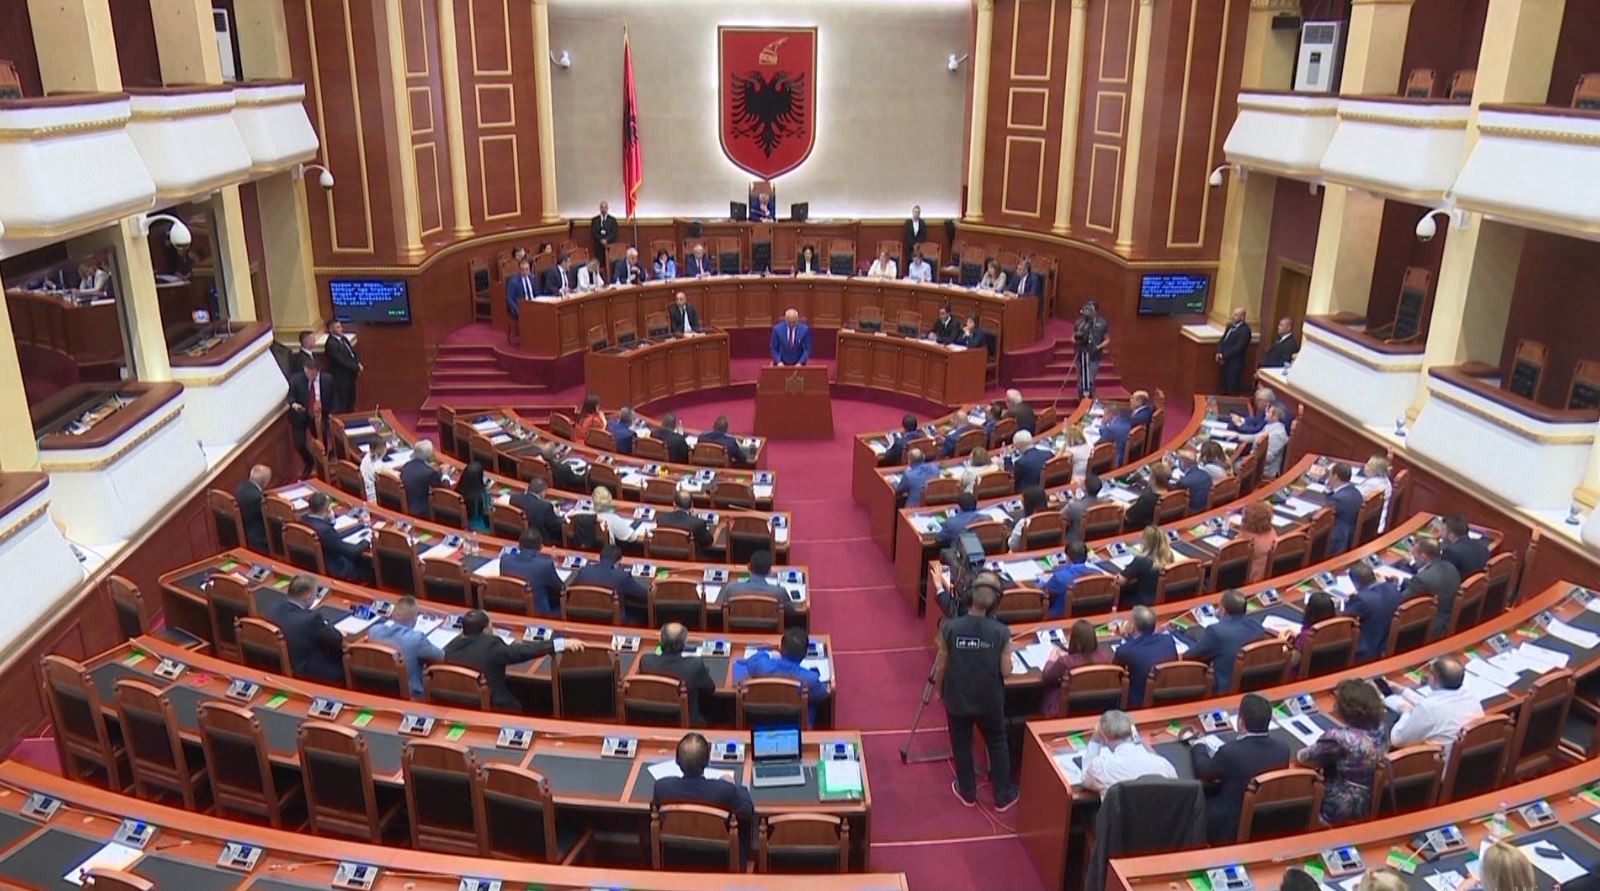 Fillon punimet legjislatura e X e Kuvendit të Shqipërisë